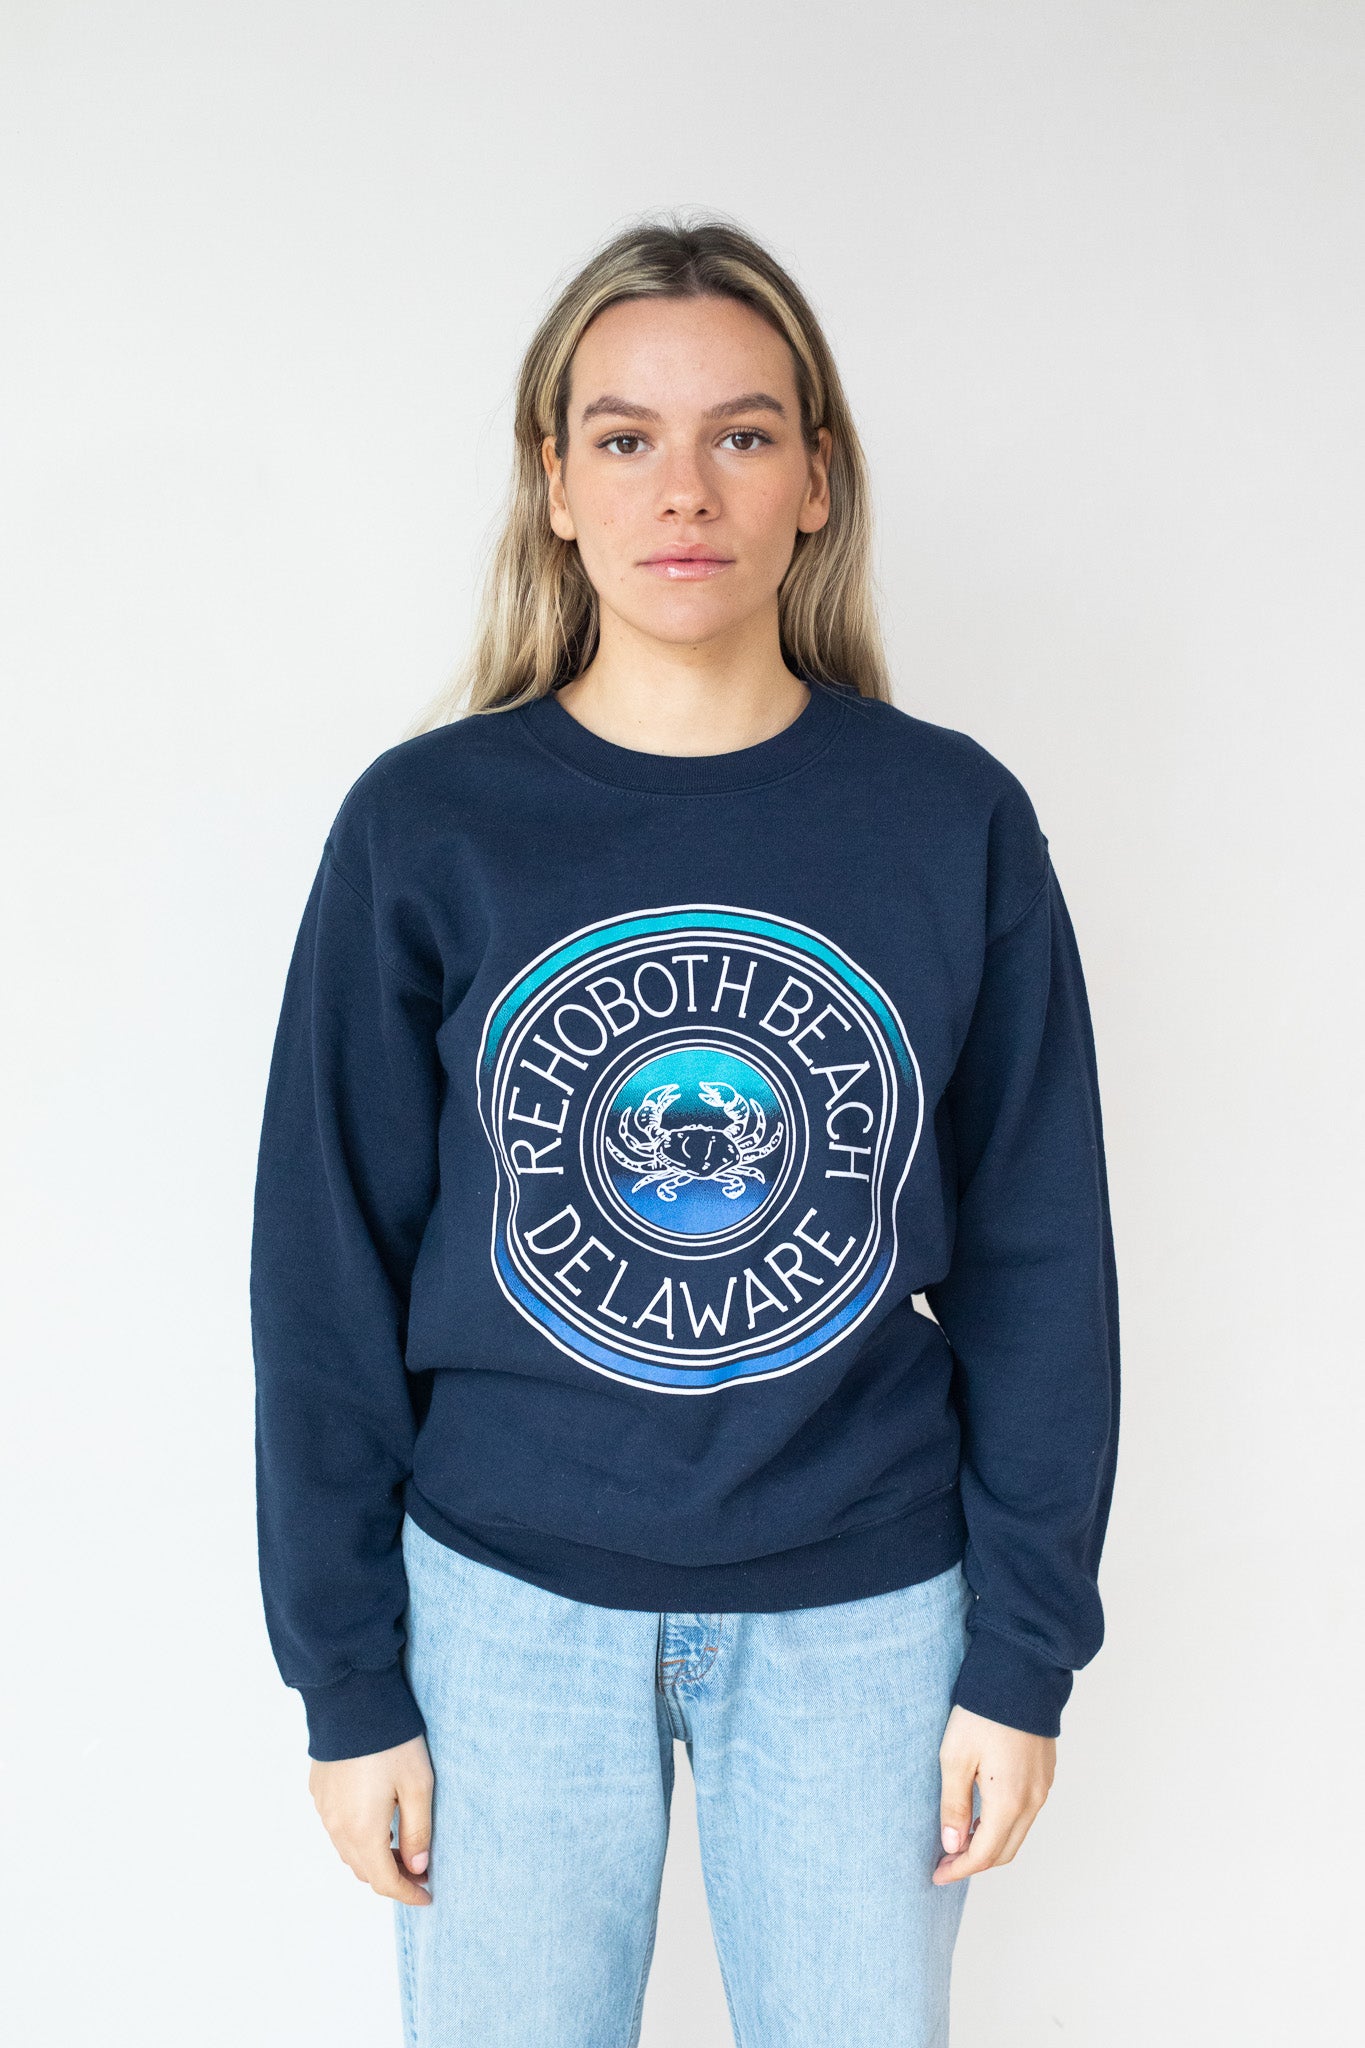 Rehoboth beach - Sweatshirt